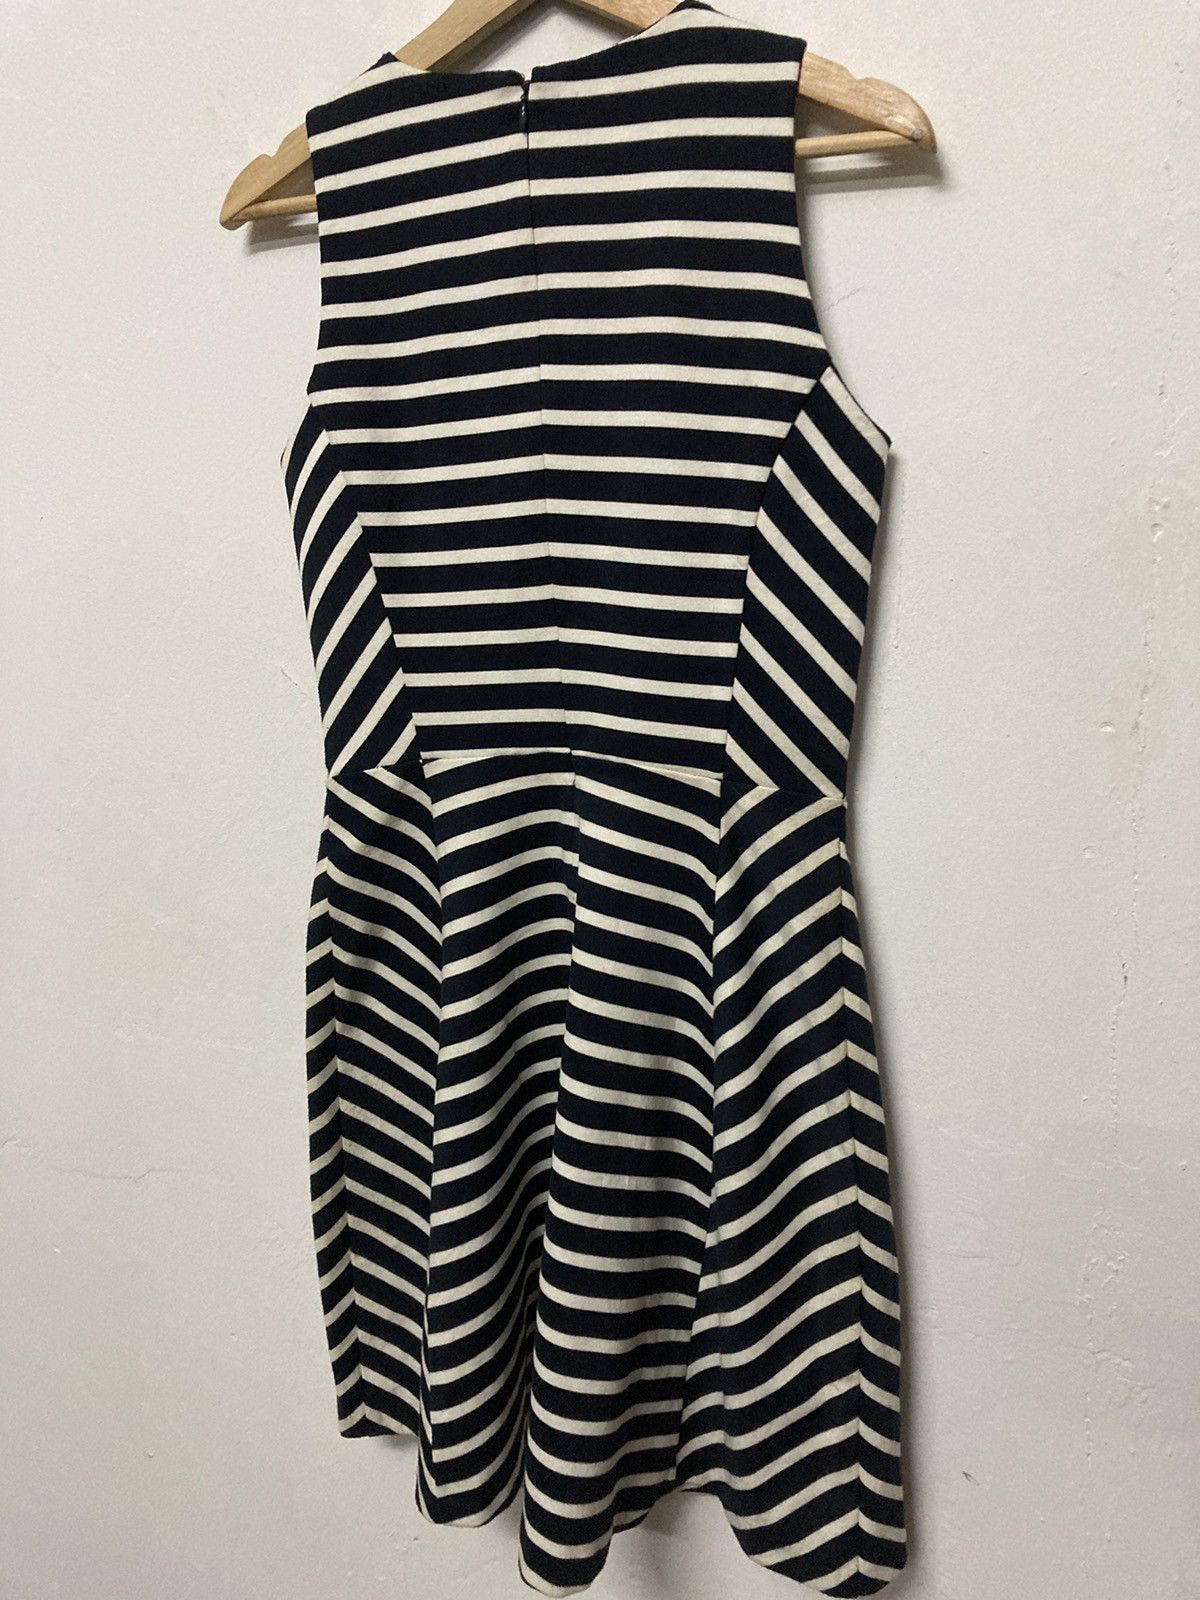 Michael Kors Sleeveless Striped Front Zip A Line Women Dress - 8